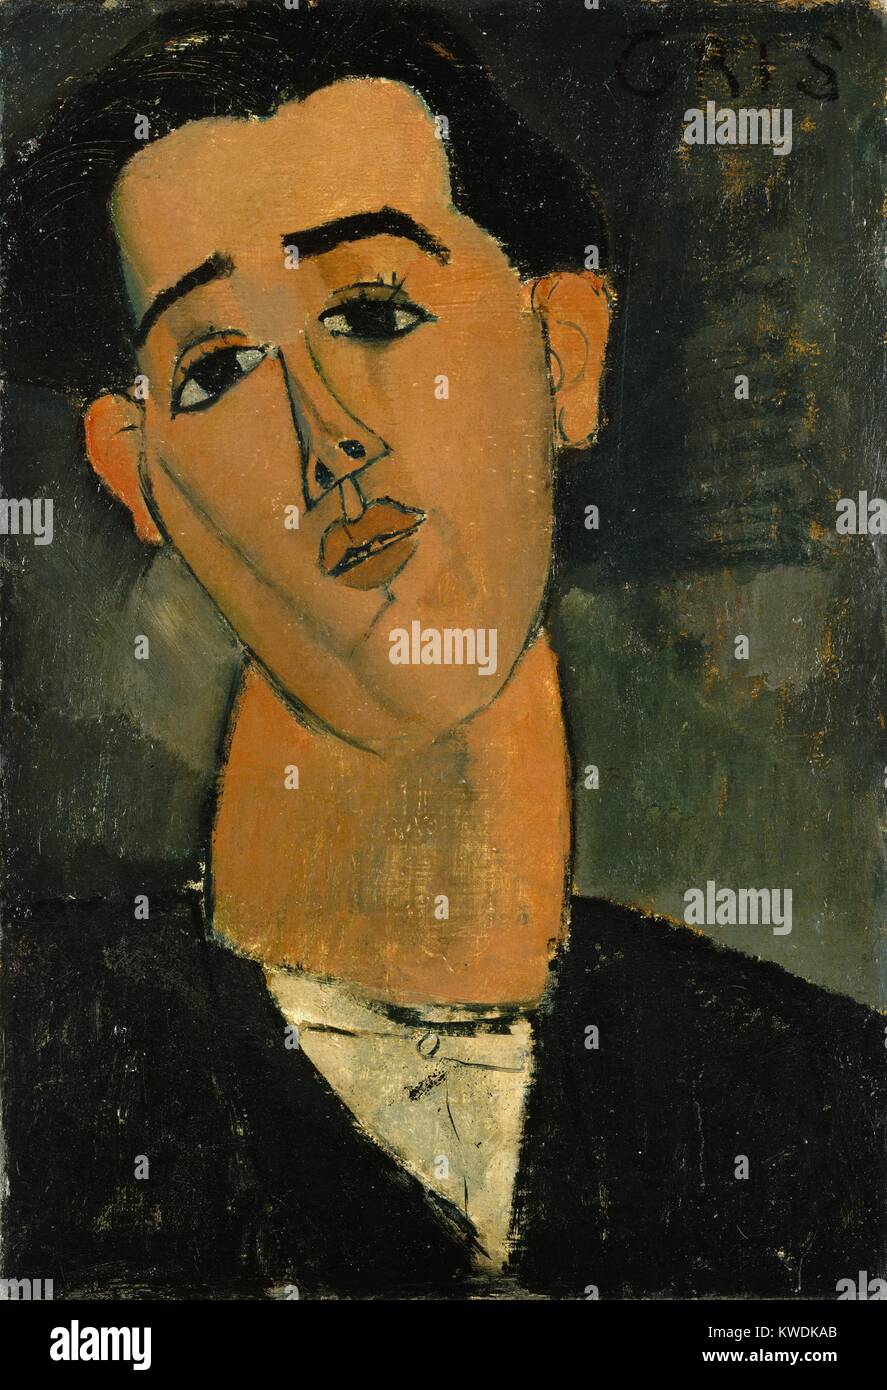 JUAN GRIS, par Amedeo Modigliani, 1915, la peinture moderniste Italienne, huile sur toile. Portrait du peintre cubiste espagnol a été réalisé à Paris pendant la PREMIÈRE GUERRE MONDIALE, après Modigliani, s'est tourné vers la peinture en raison de la pénurie de guerre BSLOC stone (2017 7 10) Banque D'Images